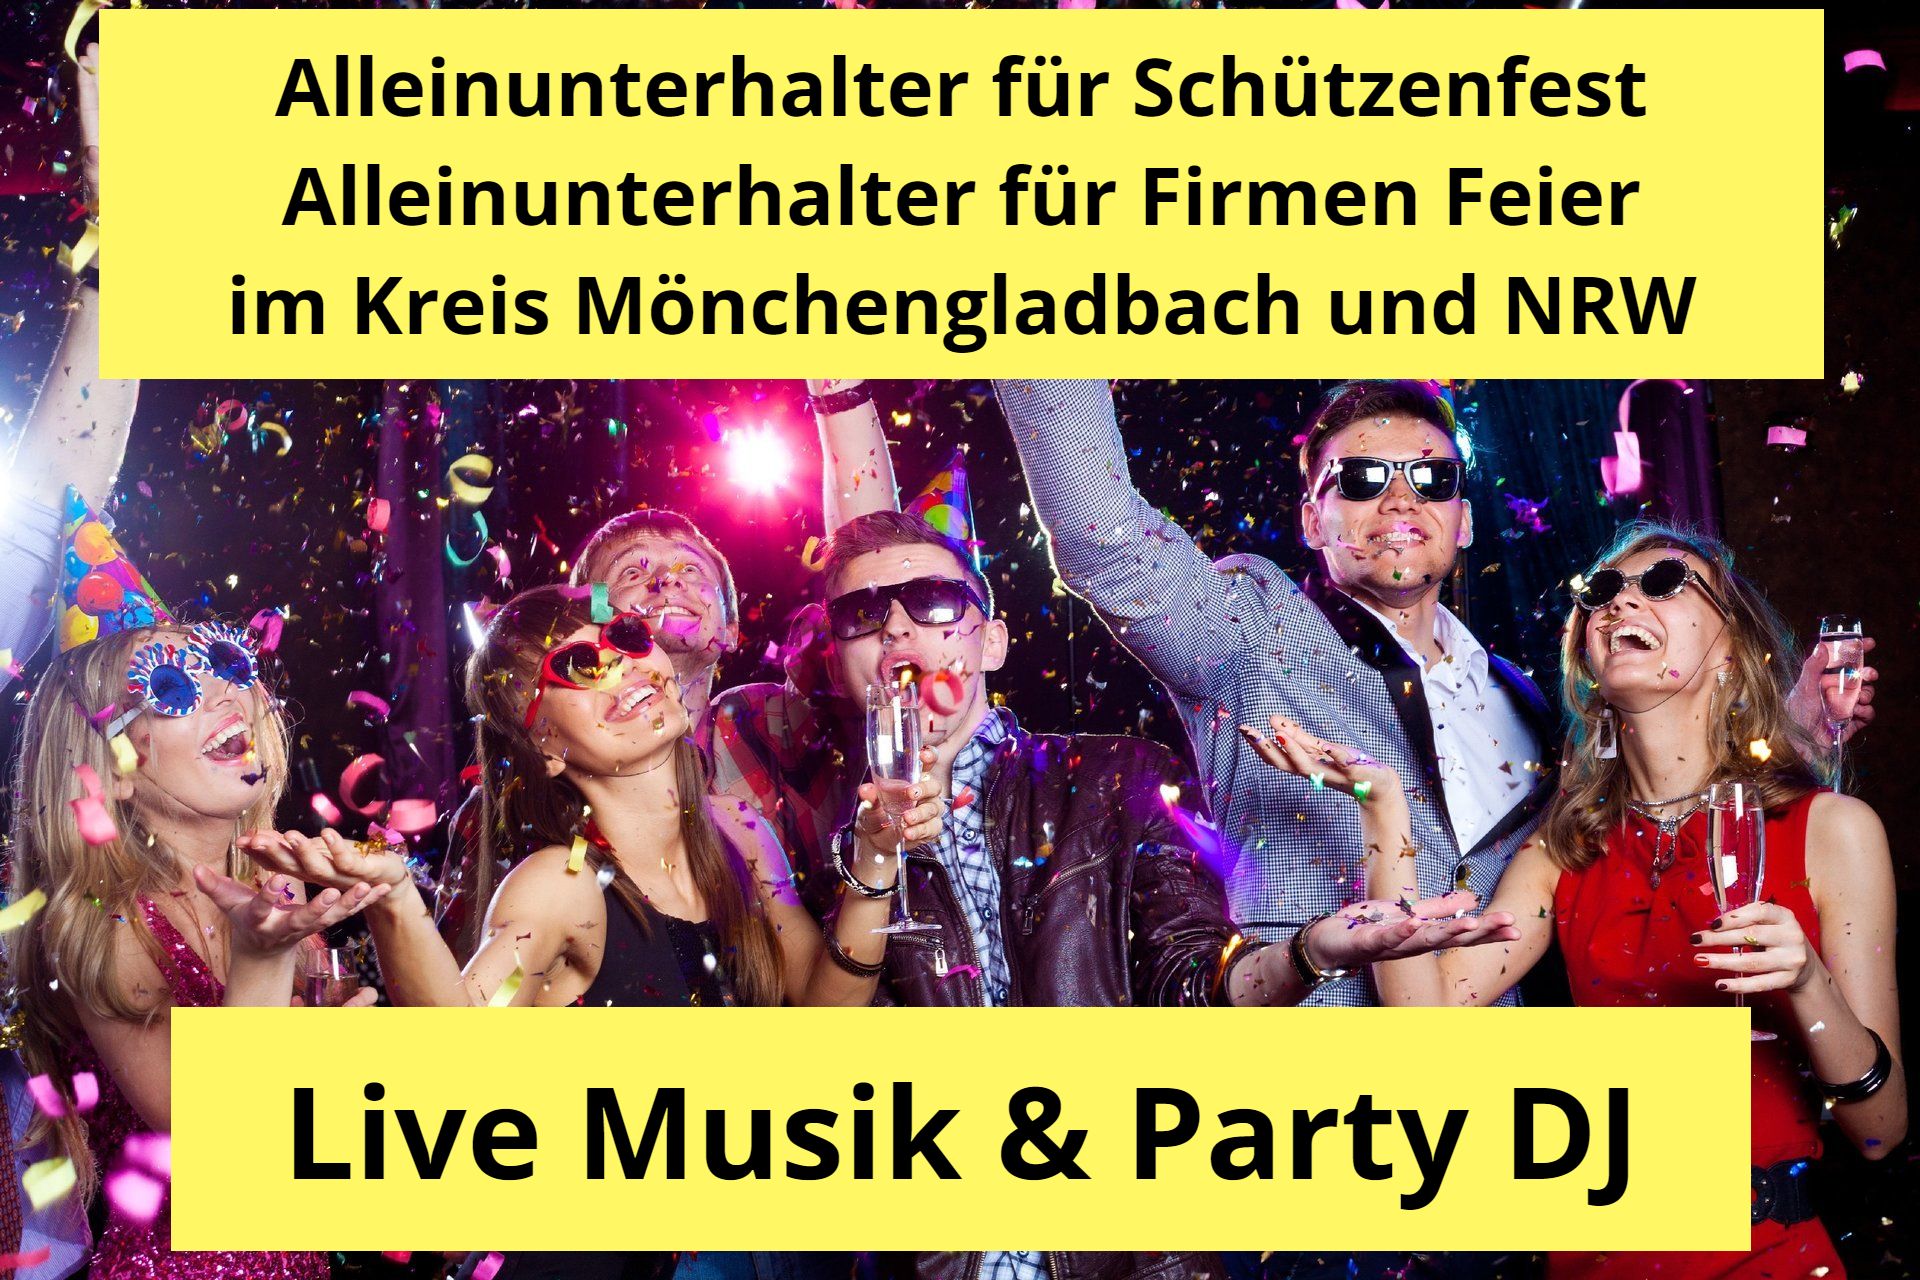 Alleinunterhalter Mönchengladbach - Schützenfest und Firmen Feier - Live Musik und DJ